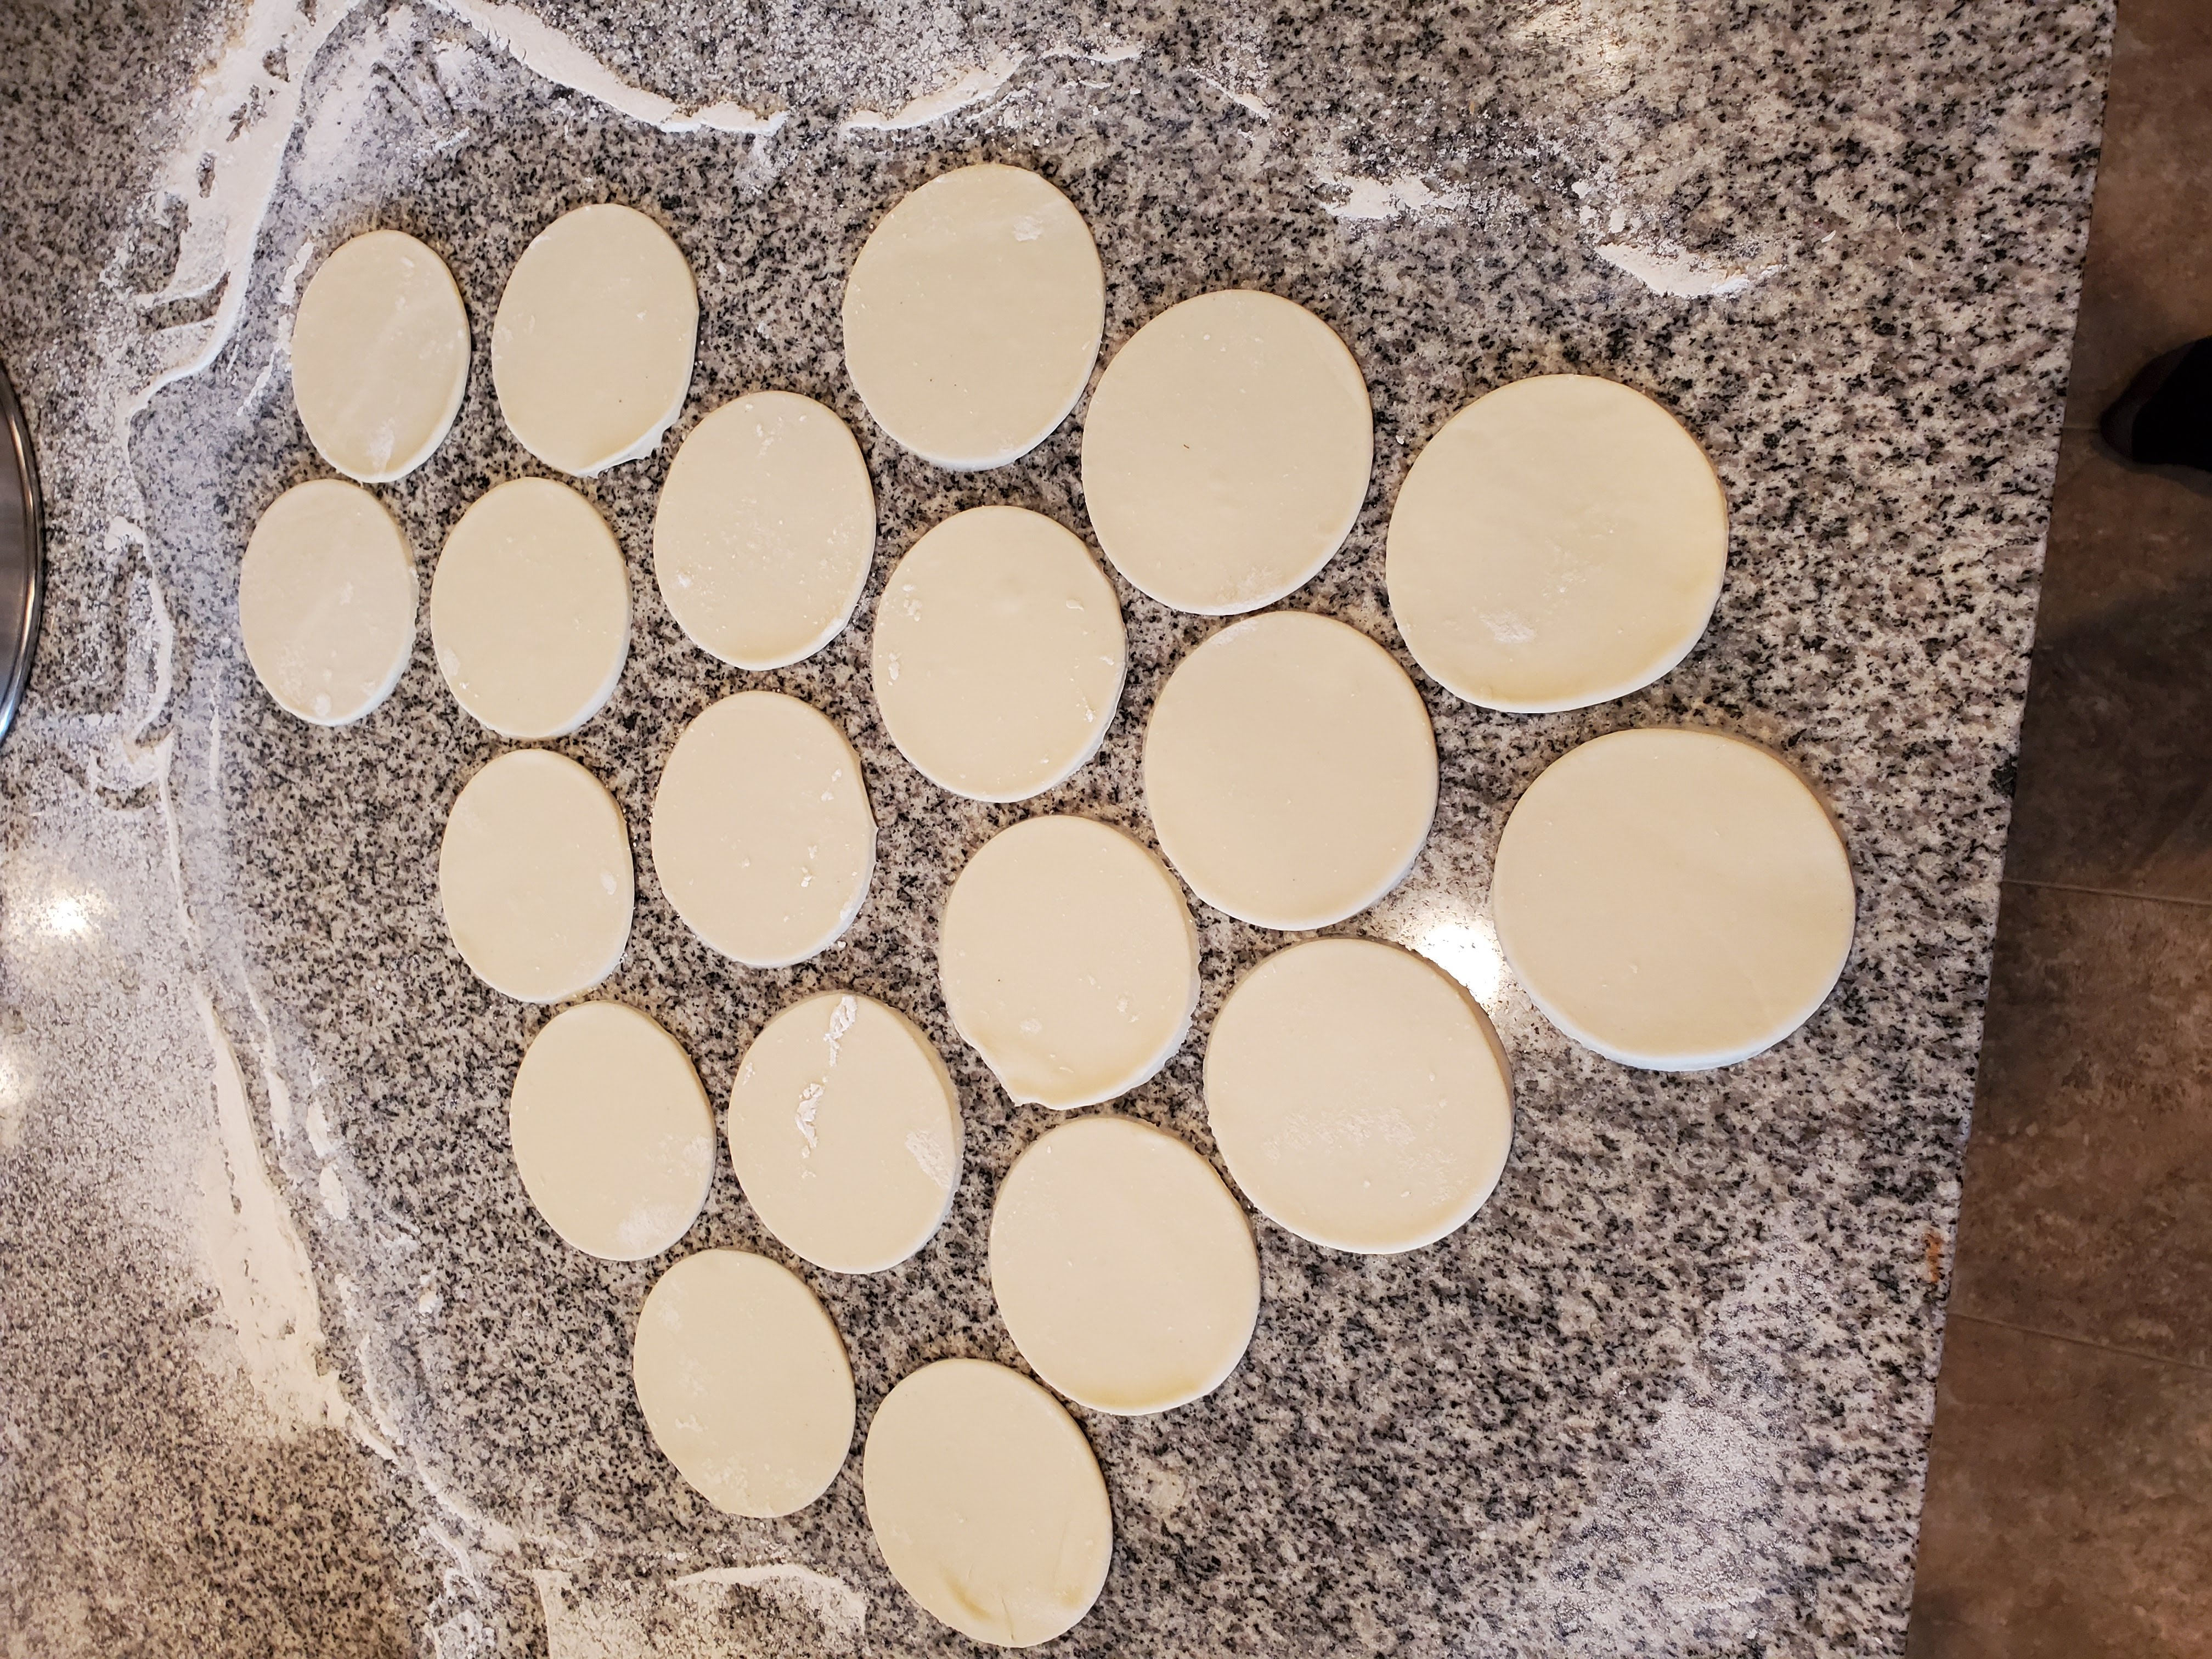 Cut pierogi dough